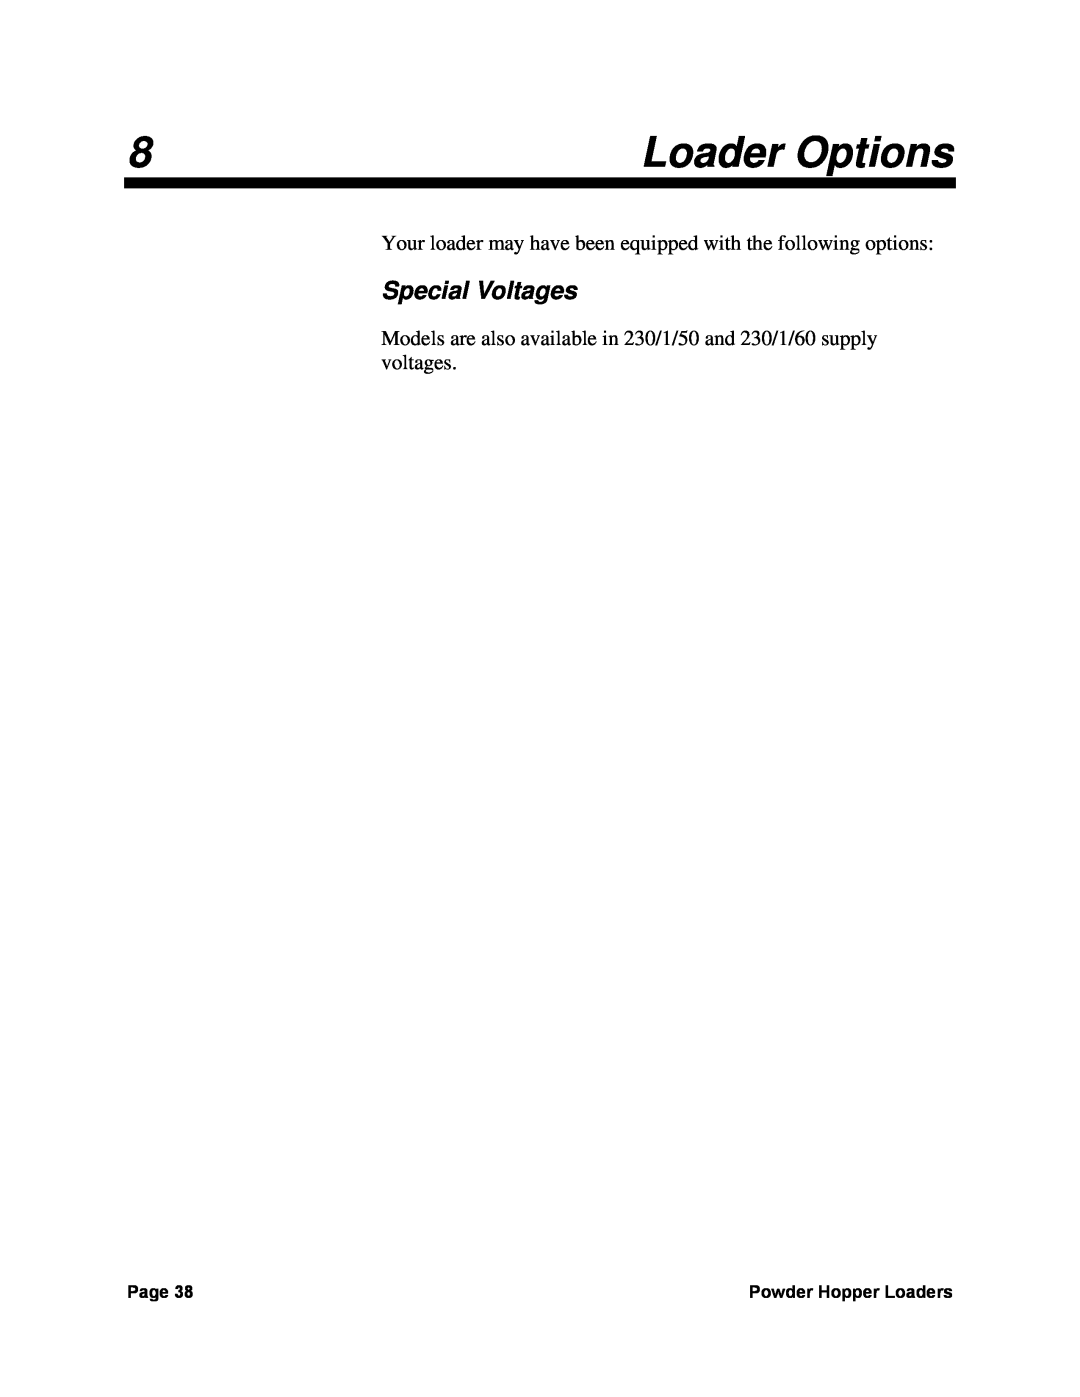 Sterling 238, 882, 0 manual Loader Options, Special Voltages 